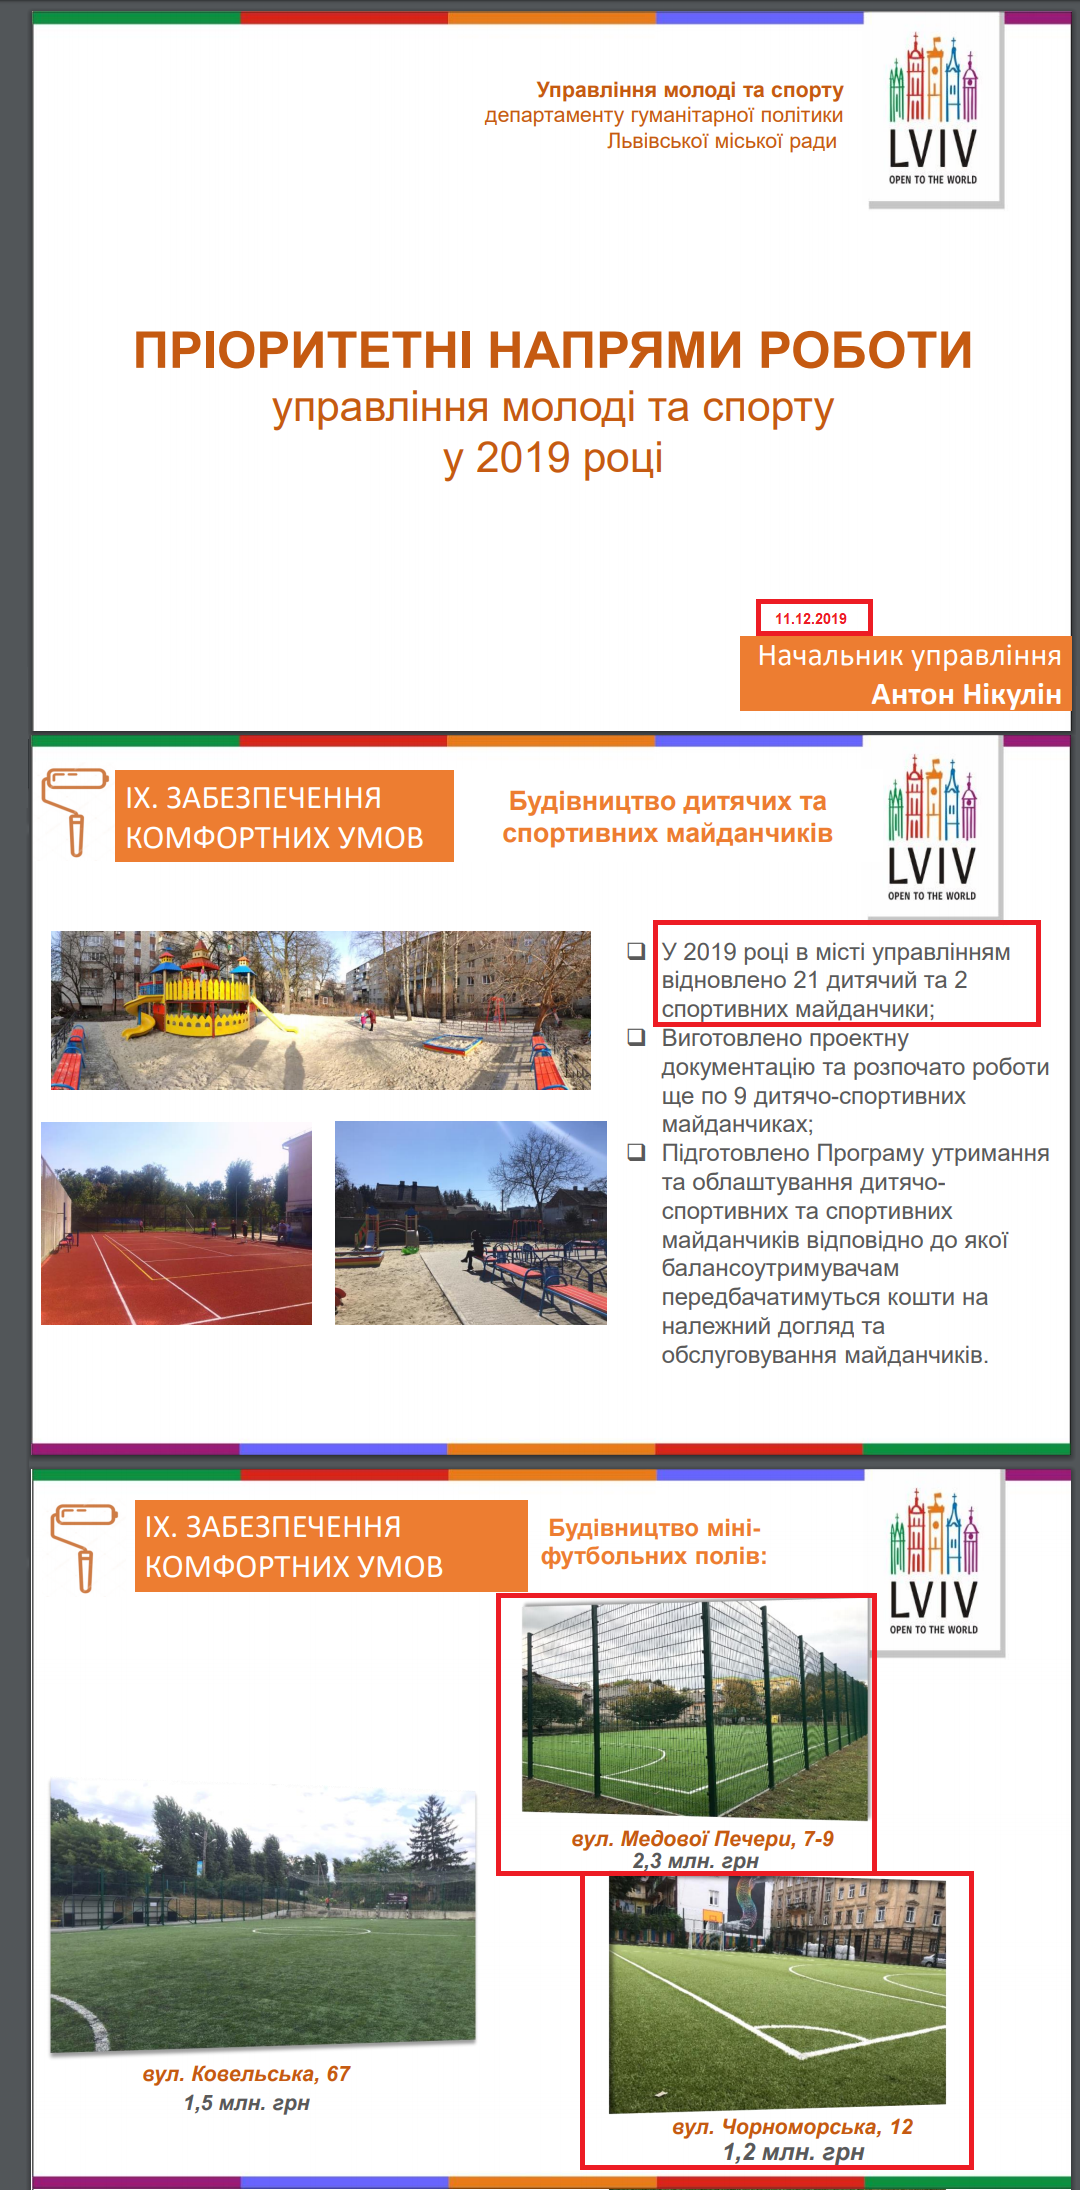 https://city-adm.lviv.ua/news/government/273795-upravlinnia-molodi-ta-sportu-lmr-prozvituvalo-pro-robotu-u-2019-rotsi